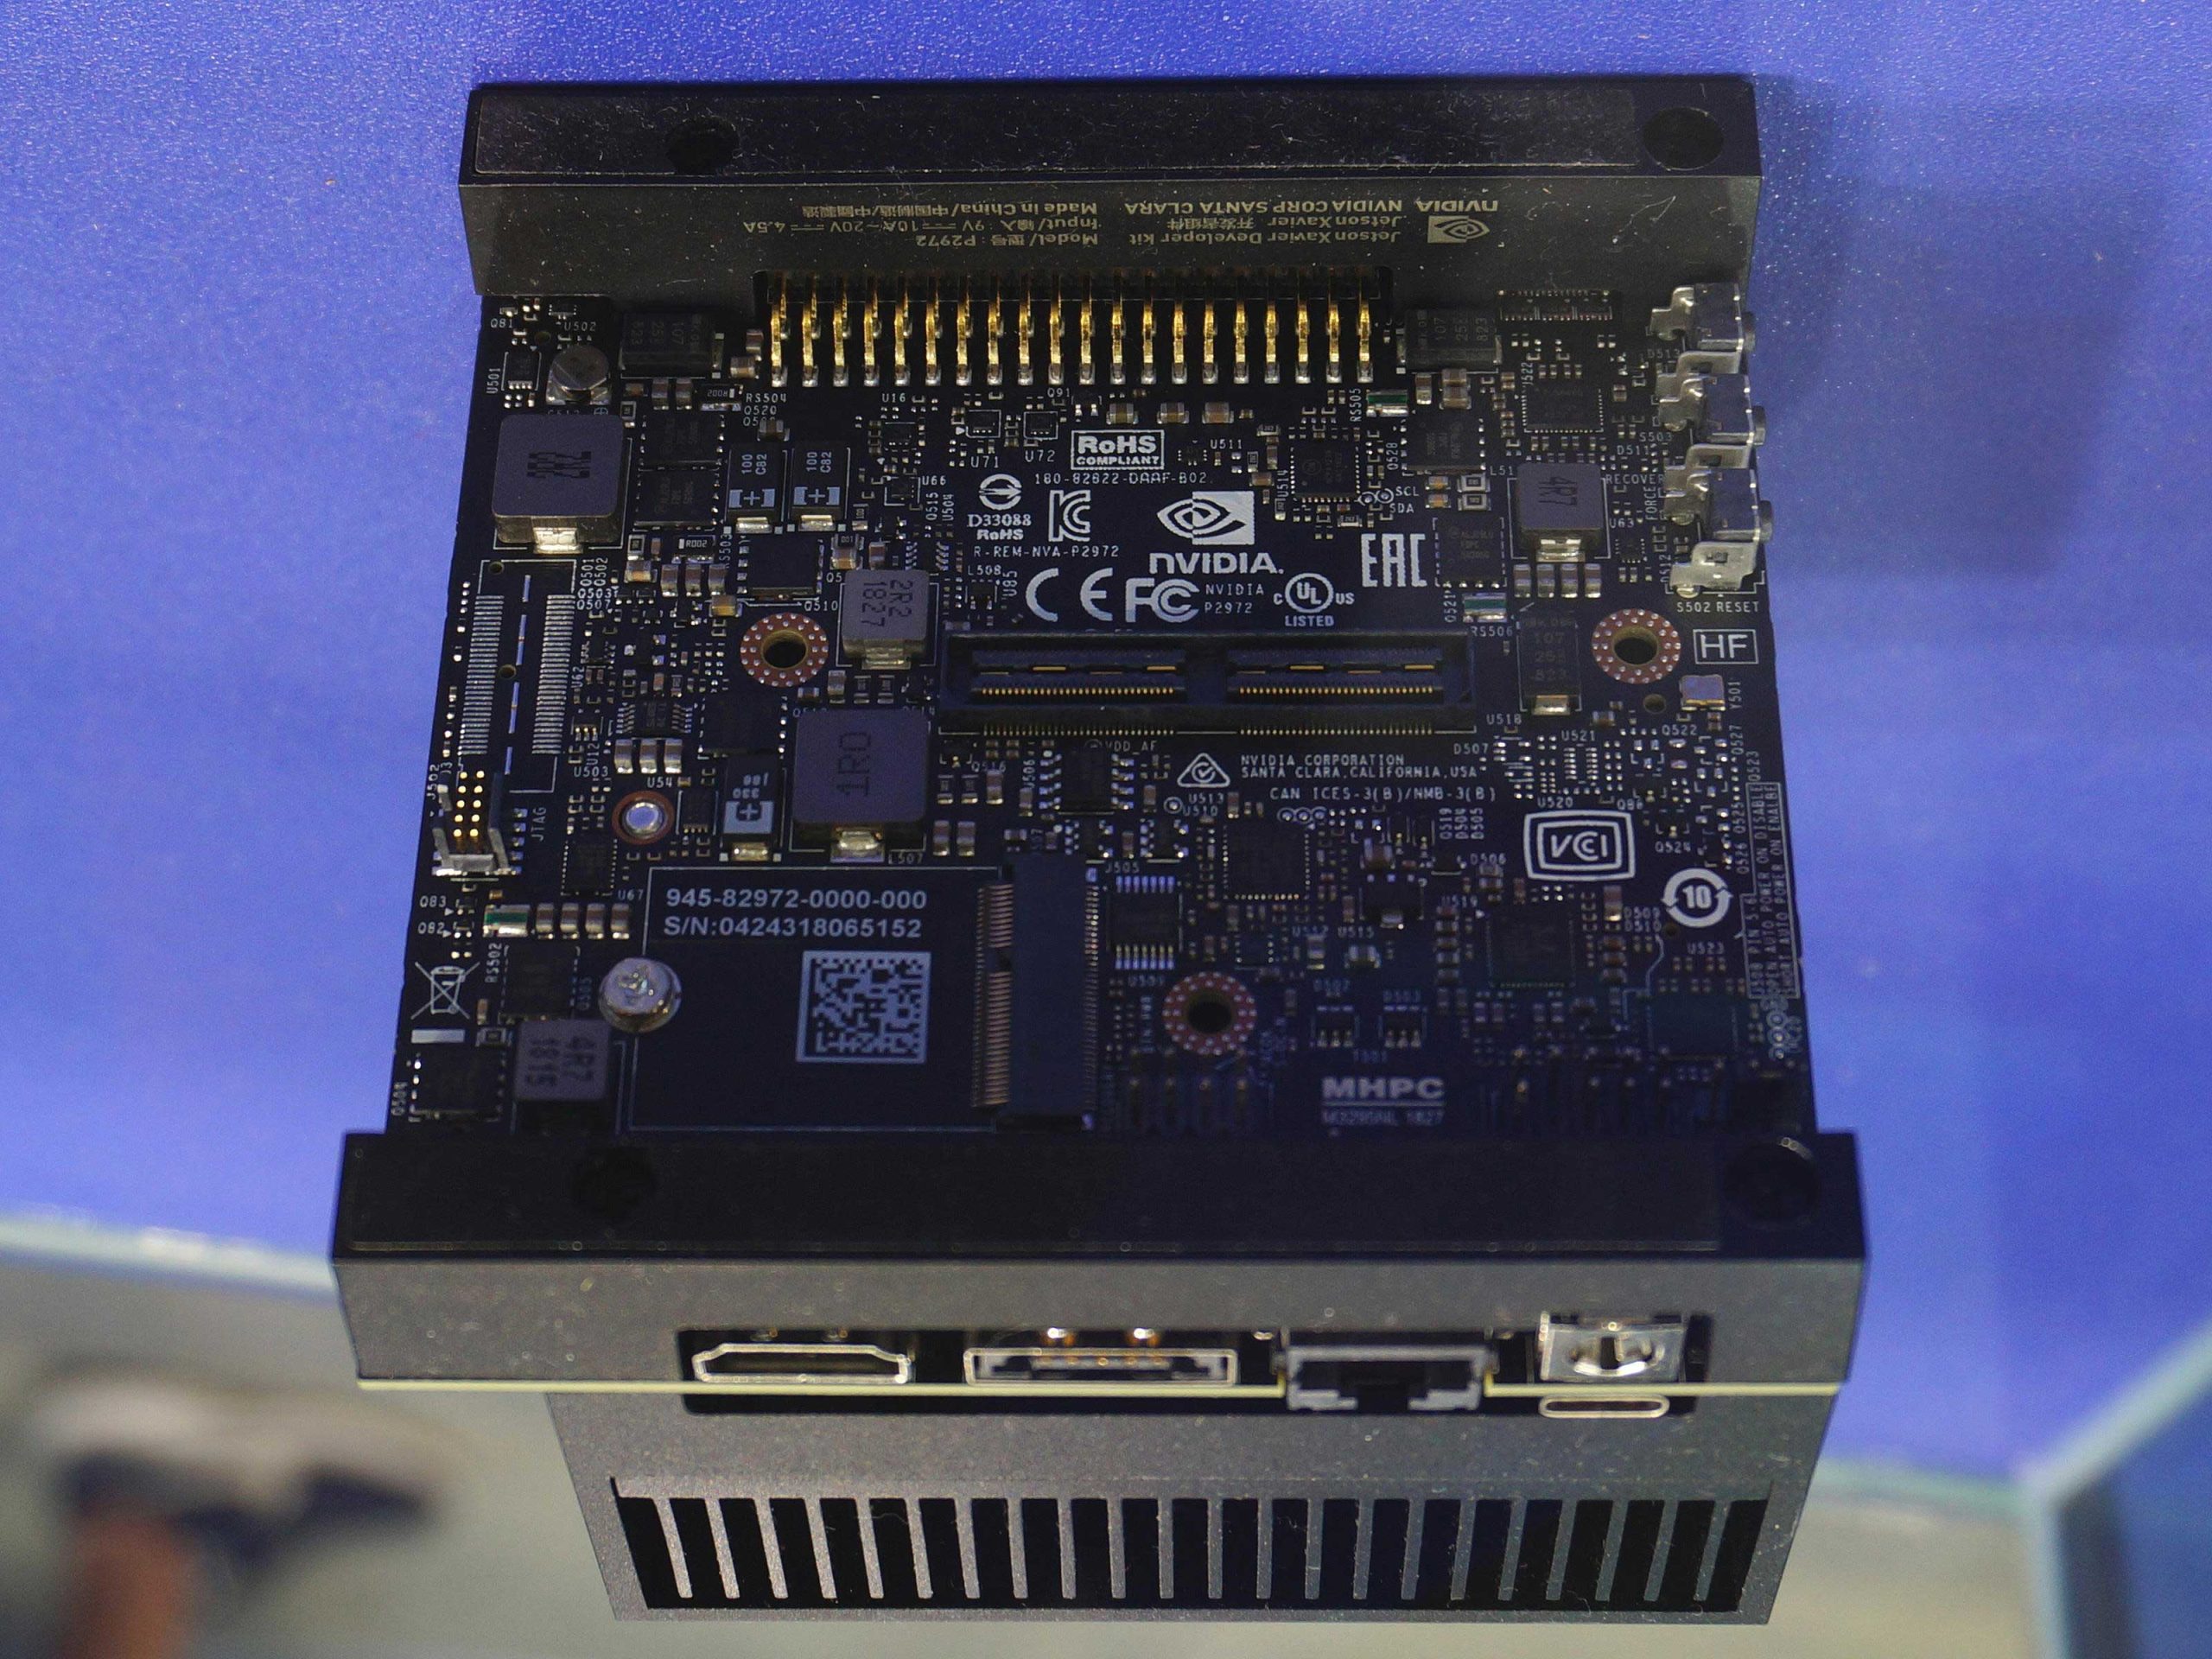 The NVIDIA P2972 AGX Xavier Developer kit